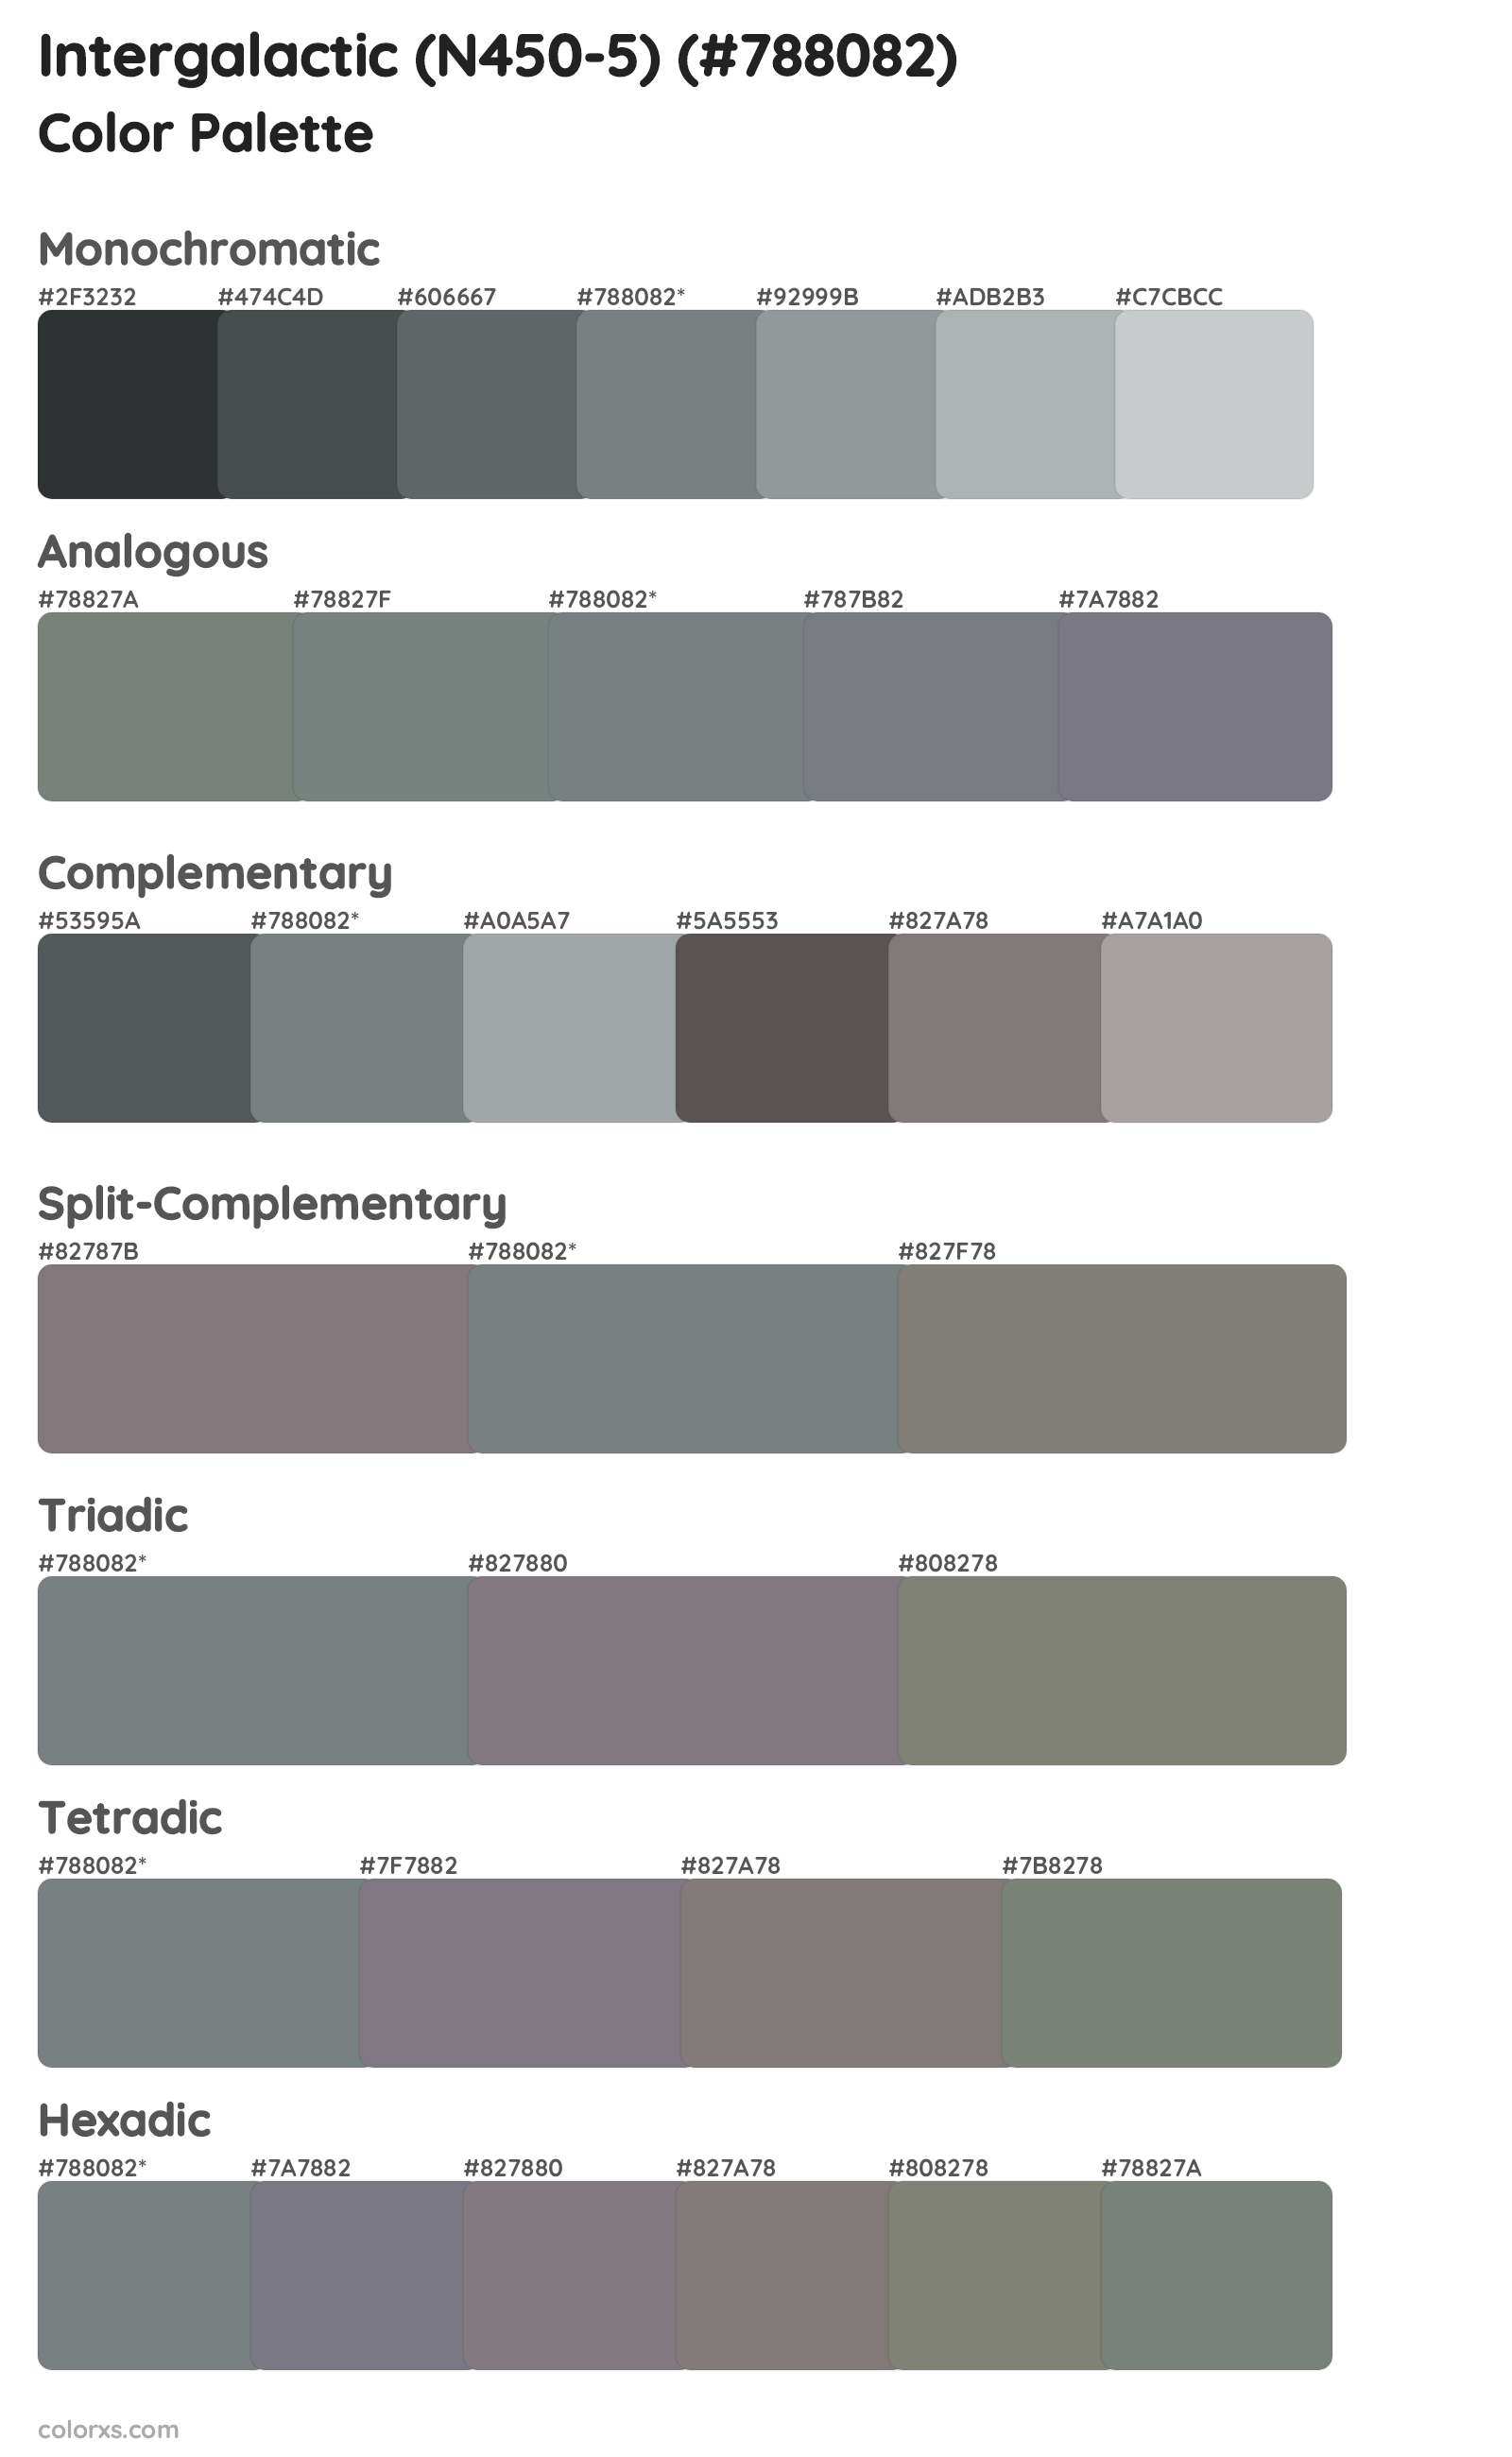 Intergalactic (N450-5) Color Scheme Palettes